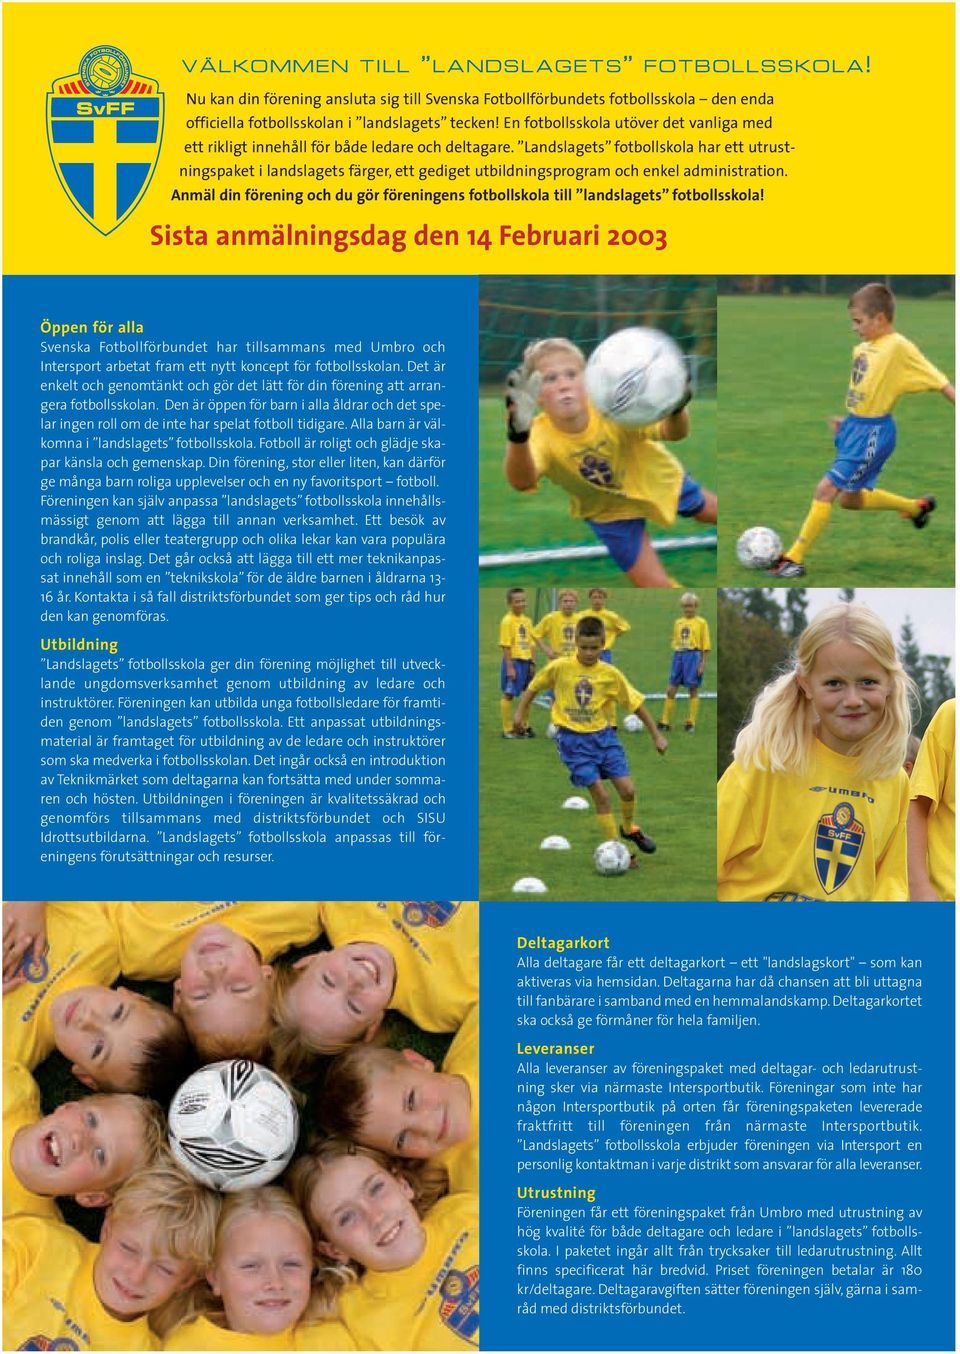 Landslagets fotbollskola har ett utrustningspaket i landslagets färger, ett gediget utbildningsprogram och enkel administration.